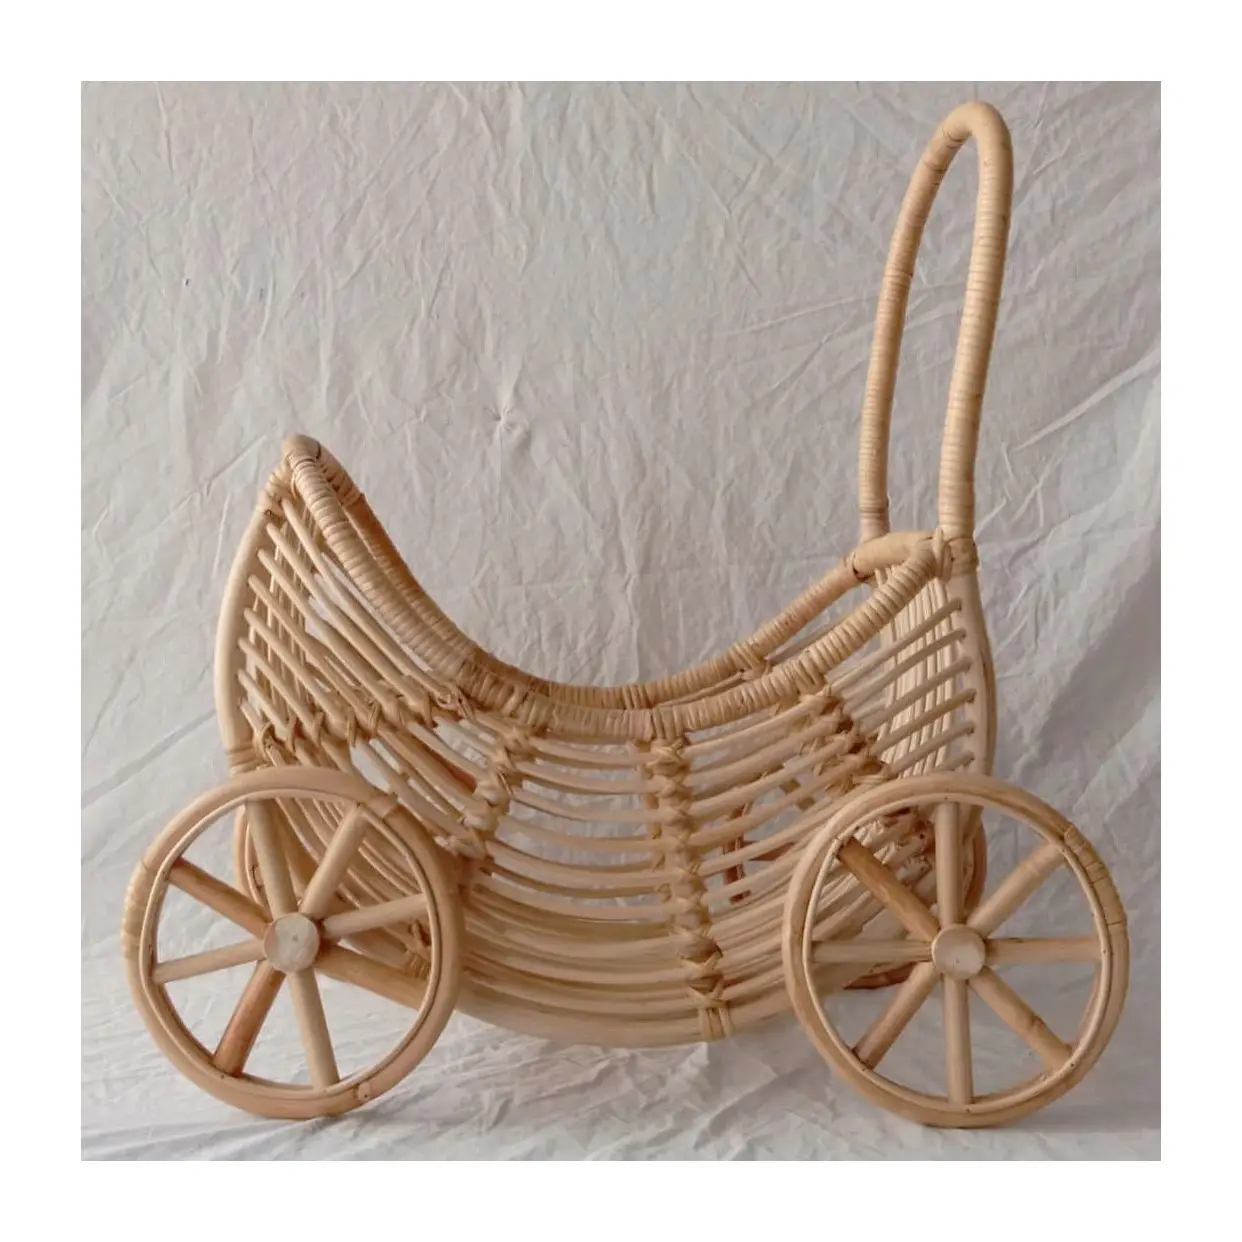 Sevimli rattan bebek arabası pram vagon oyuncaklar çocuklar için toptan fiyat bebekler strobaby bebek buggy arabası çocuk hediyeler çocuk oyuncağı